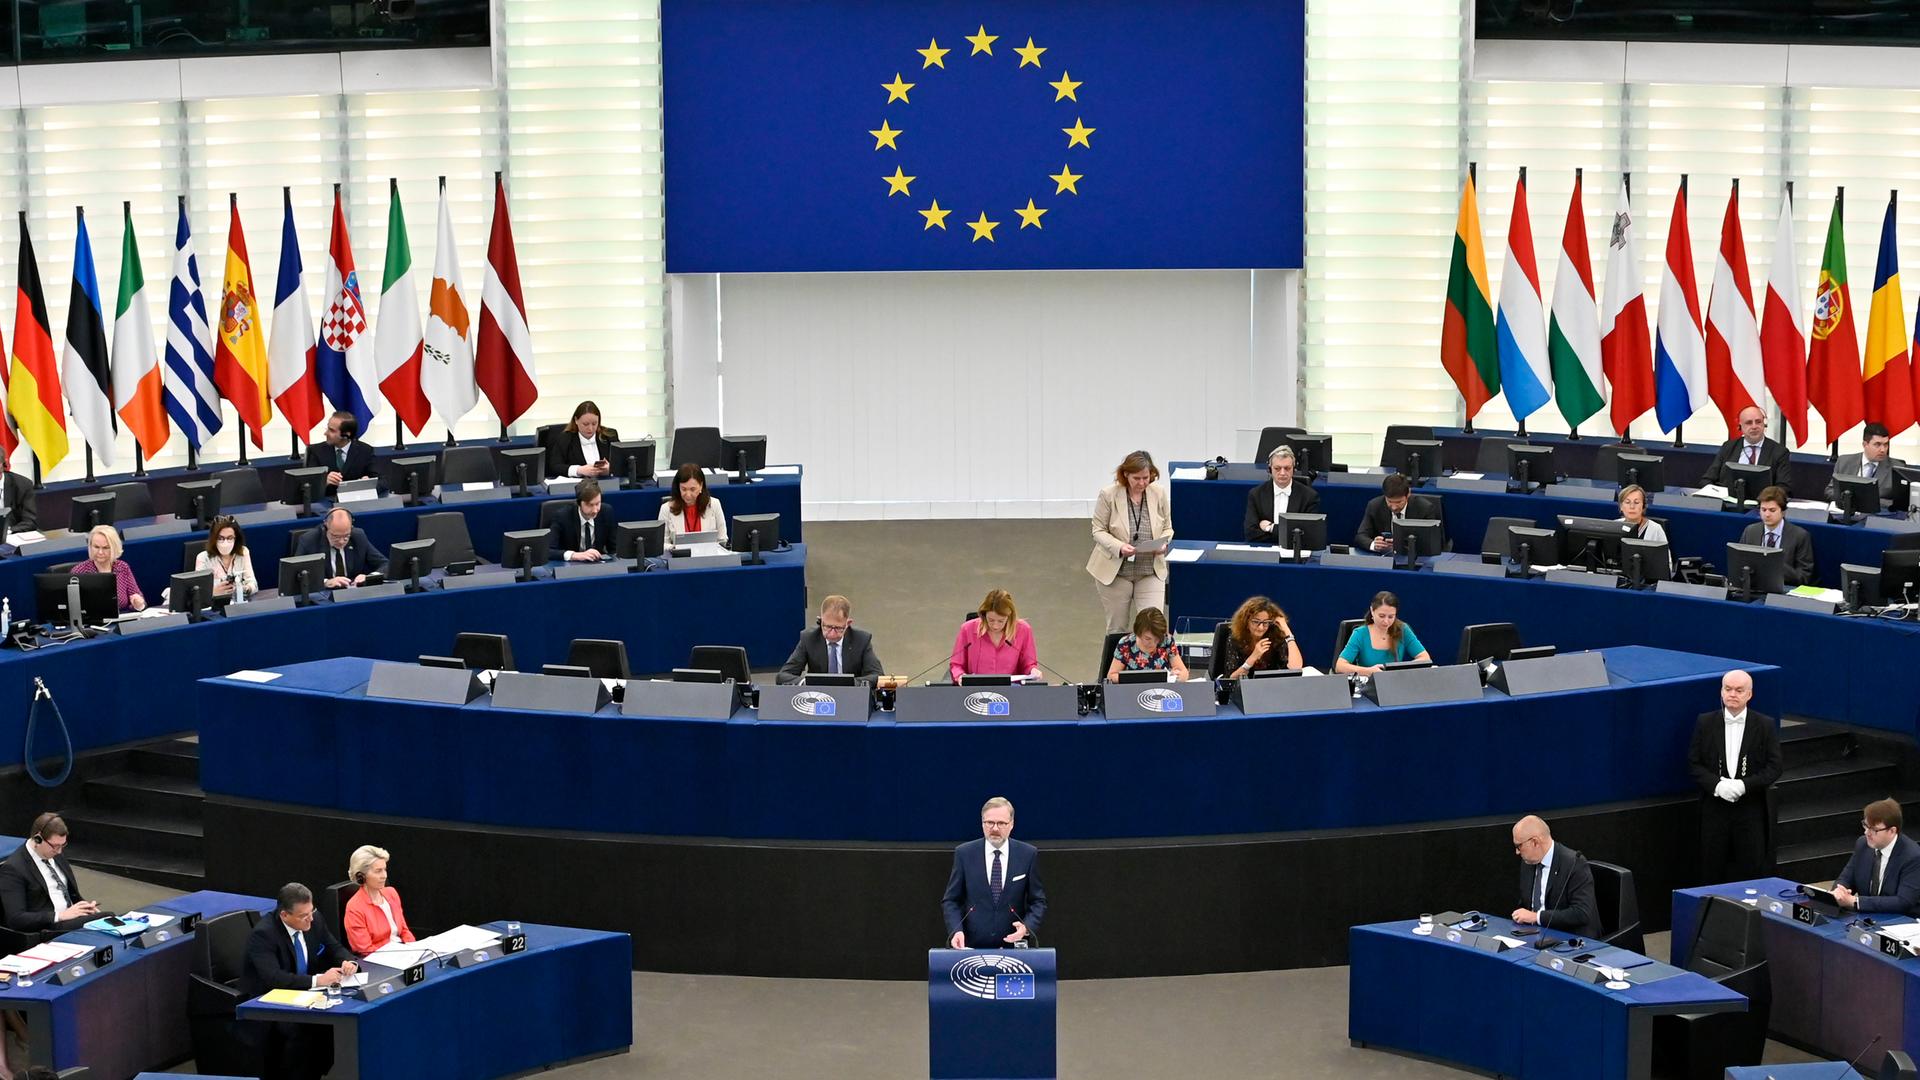 Petr Fiala stellt Prioritäten der tschechischen EU-Ratspräsidentschaft im EU-Parlament in Straßburg vor, 6. Juli 2022